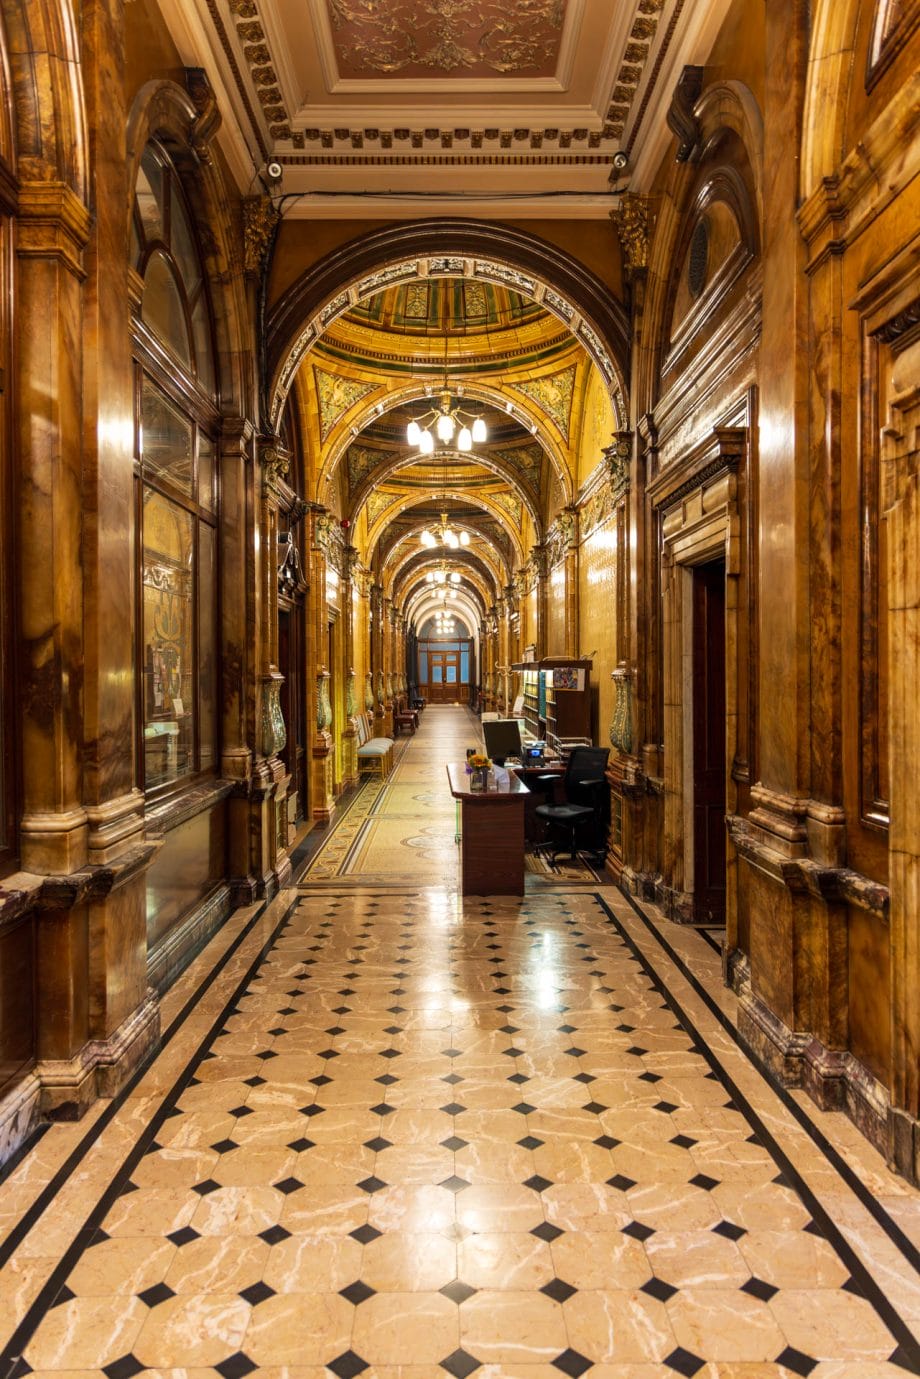 Der Councillers’ Corridor ist ein langer Gang, über dem sich mehrere kleine Gewölbedecken eröffnen Sie sind reich verziert.